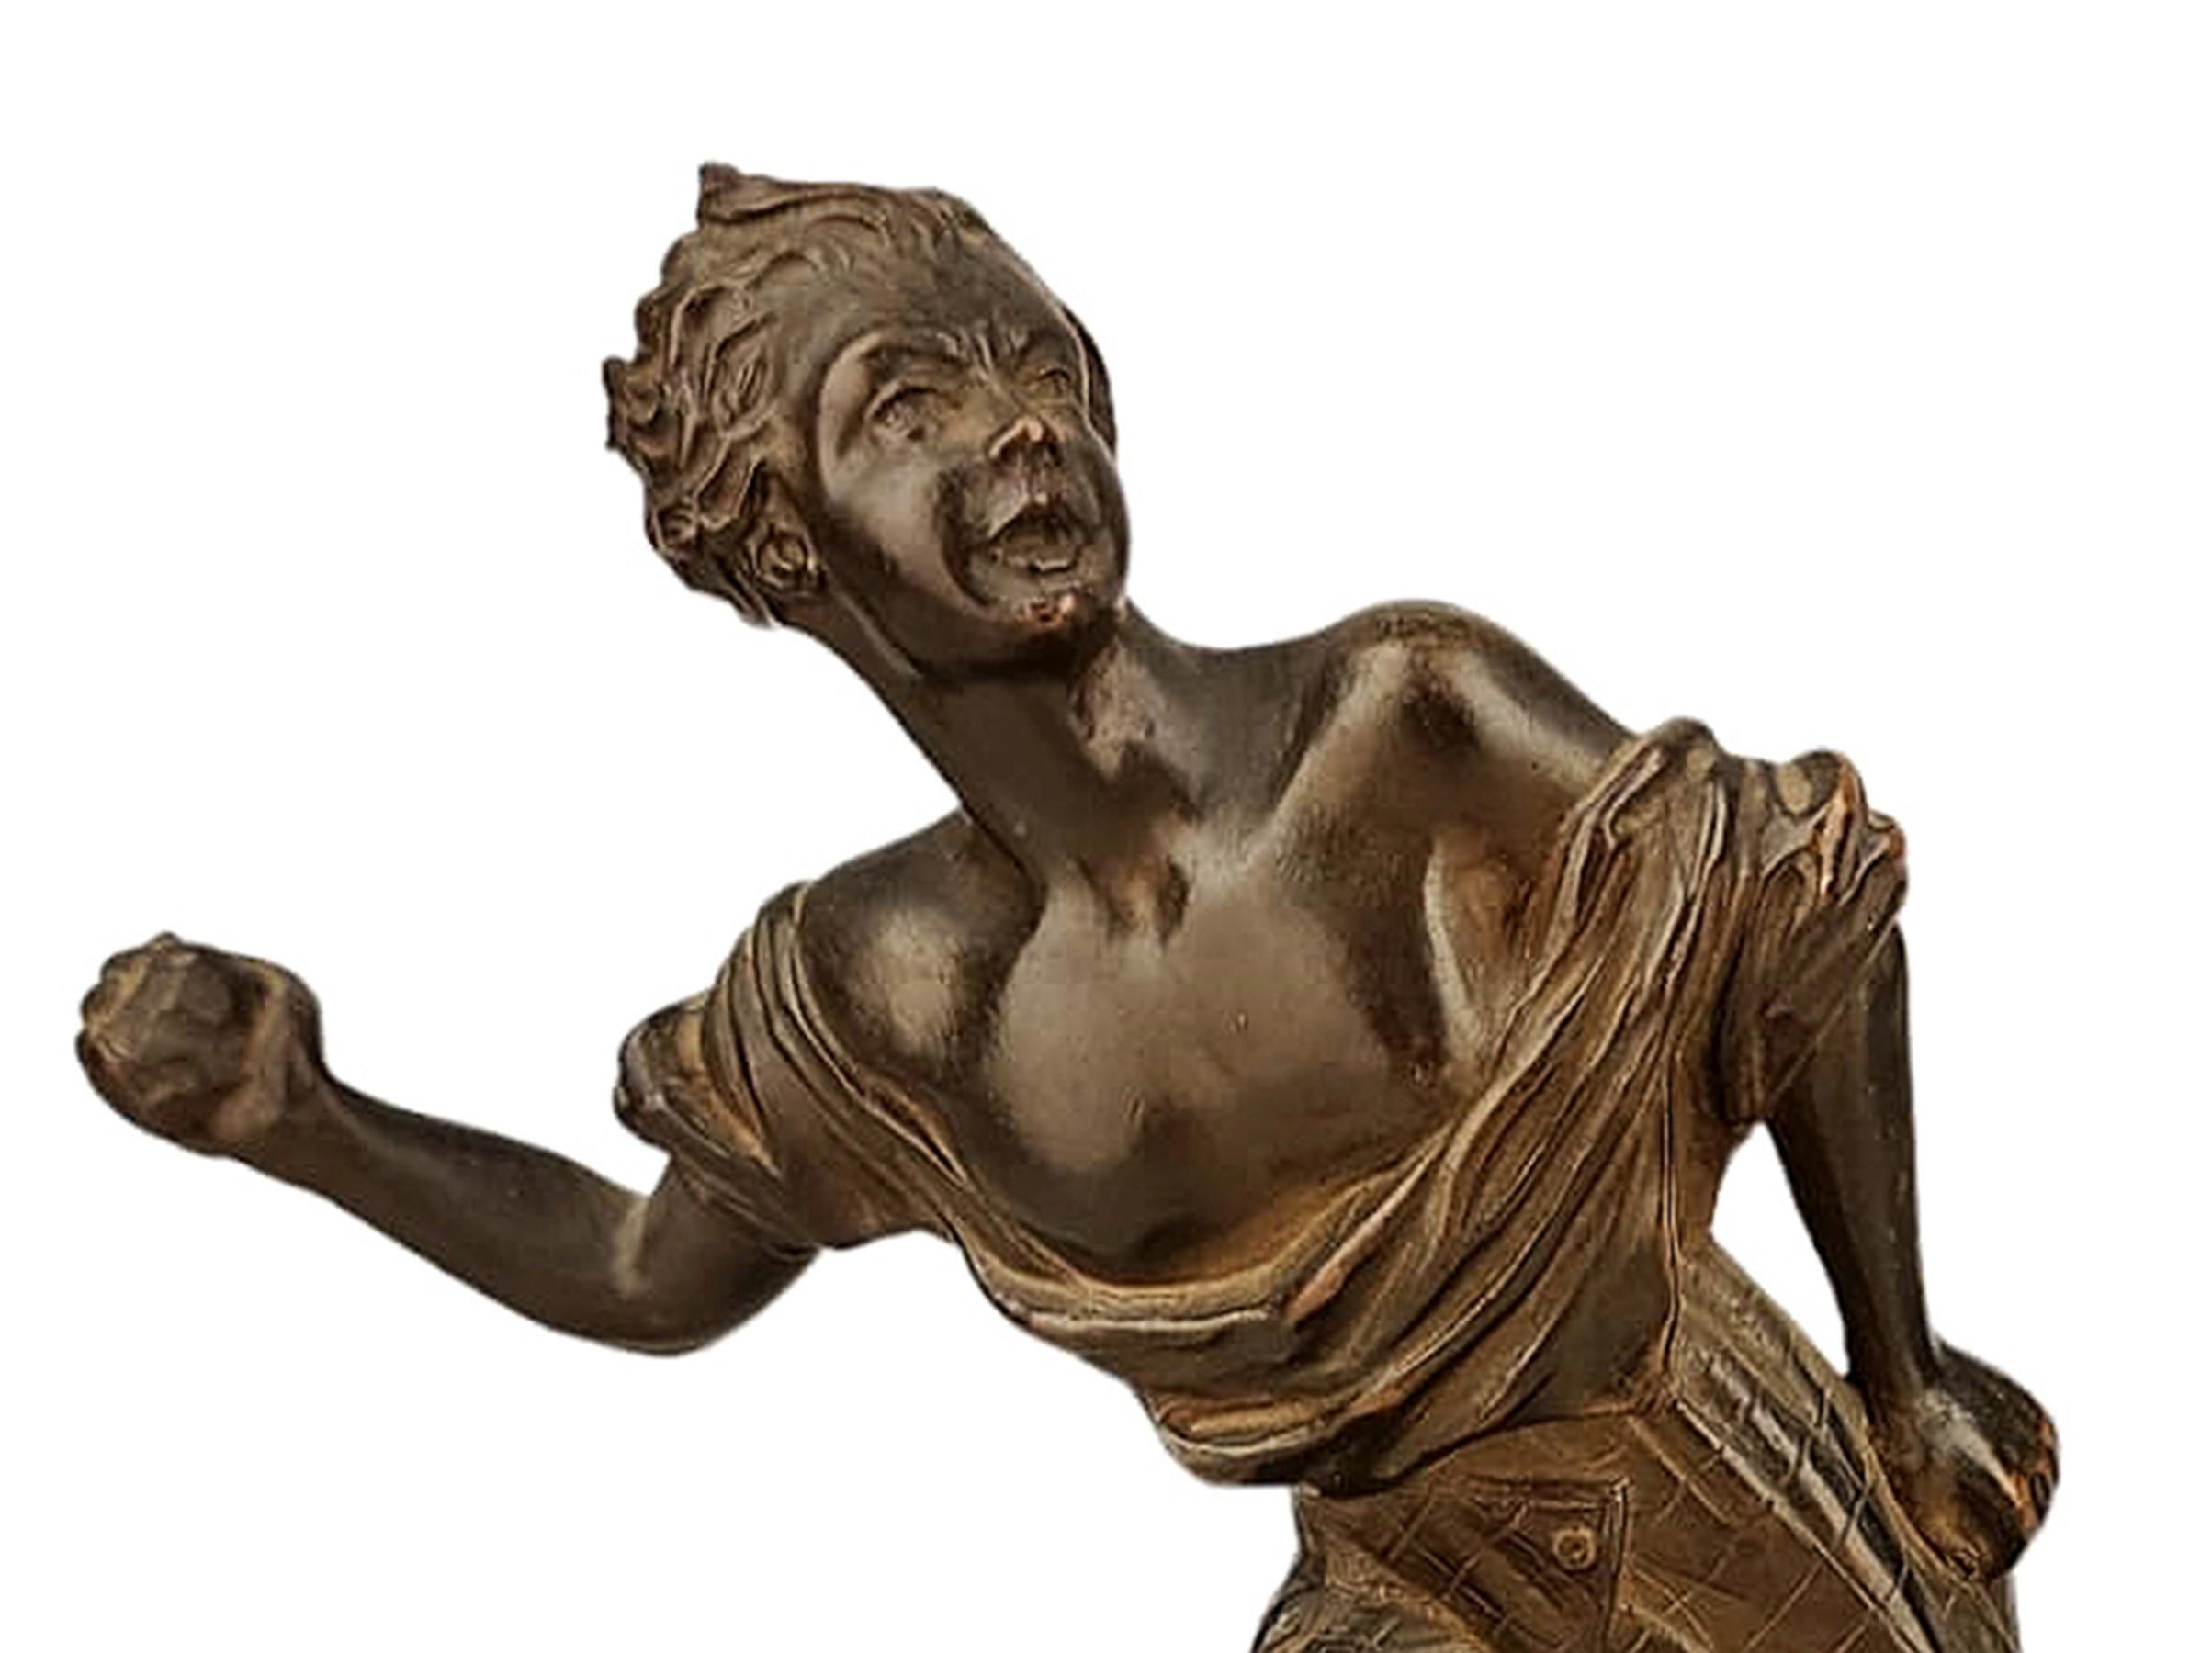 20th Century Early 20th C. Italian Bronze Sculpture Depicting Giambattista Perasso 'Balilla' For Sale